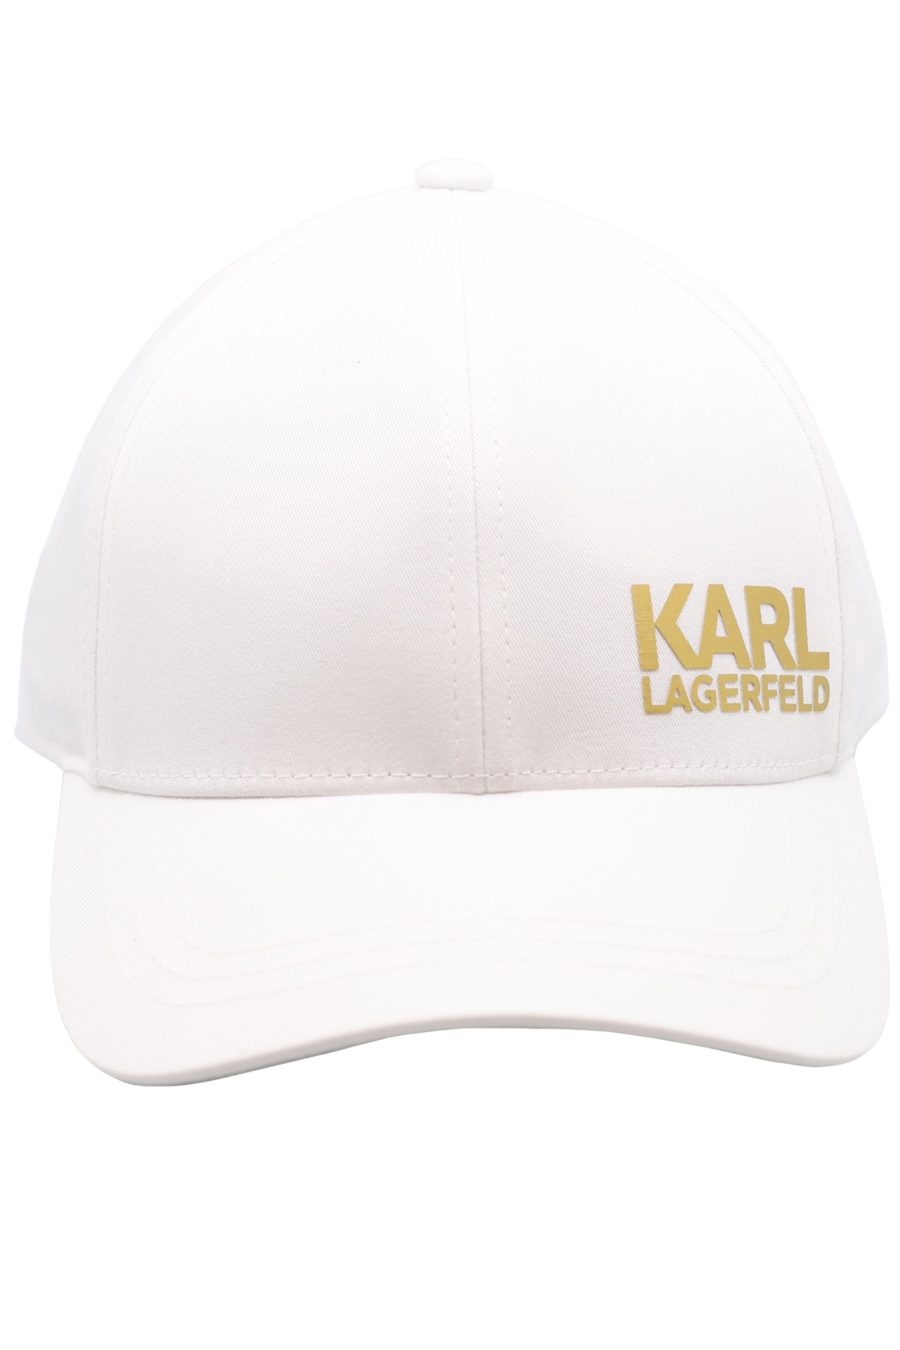 Weiße Mütze mit goldenem "Karl Legerfeld" Logo - 49cf6fa7d1f87a3d39db31d609bdb6cf443a88e4